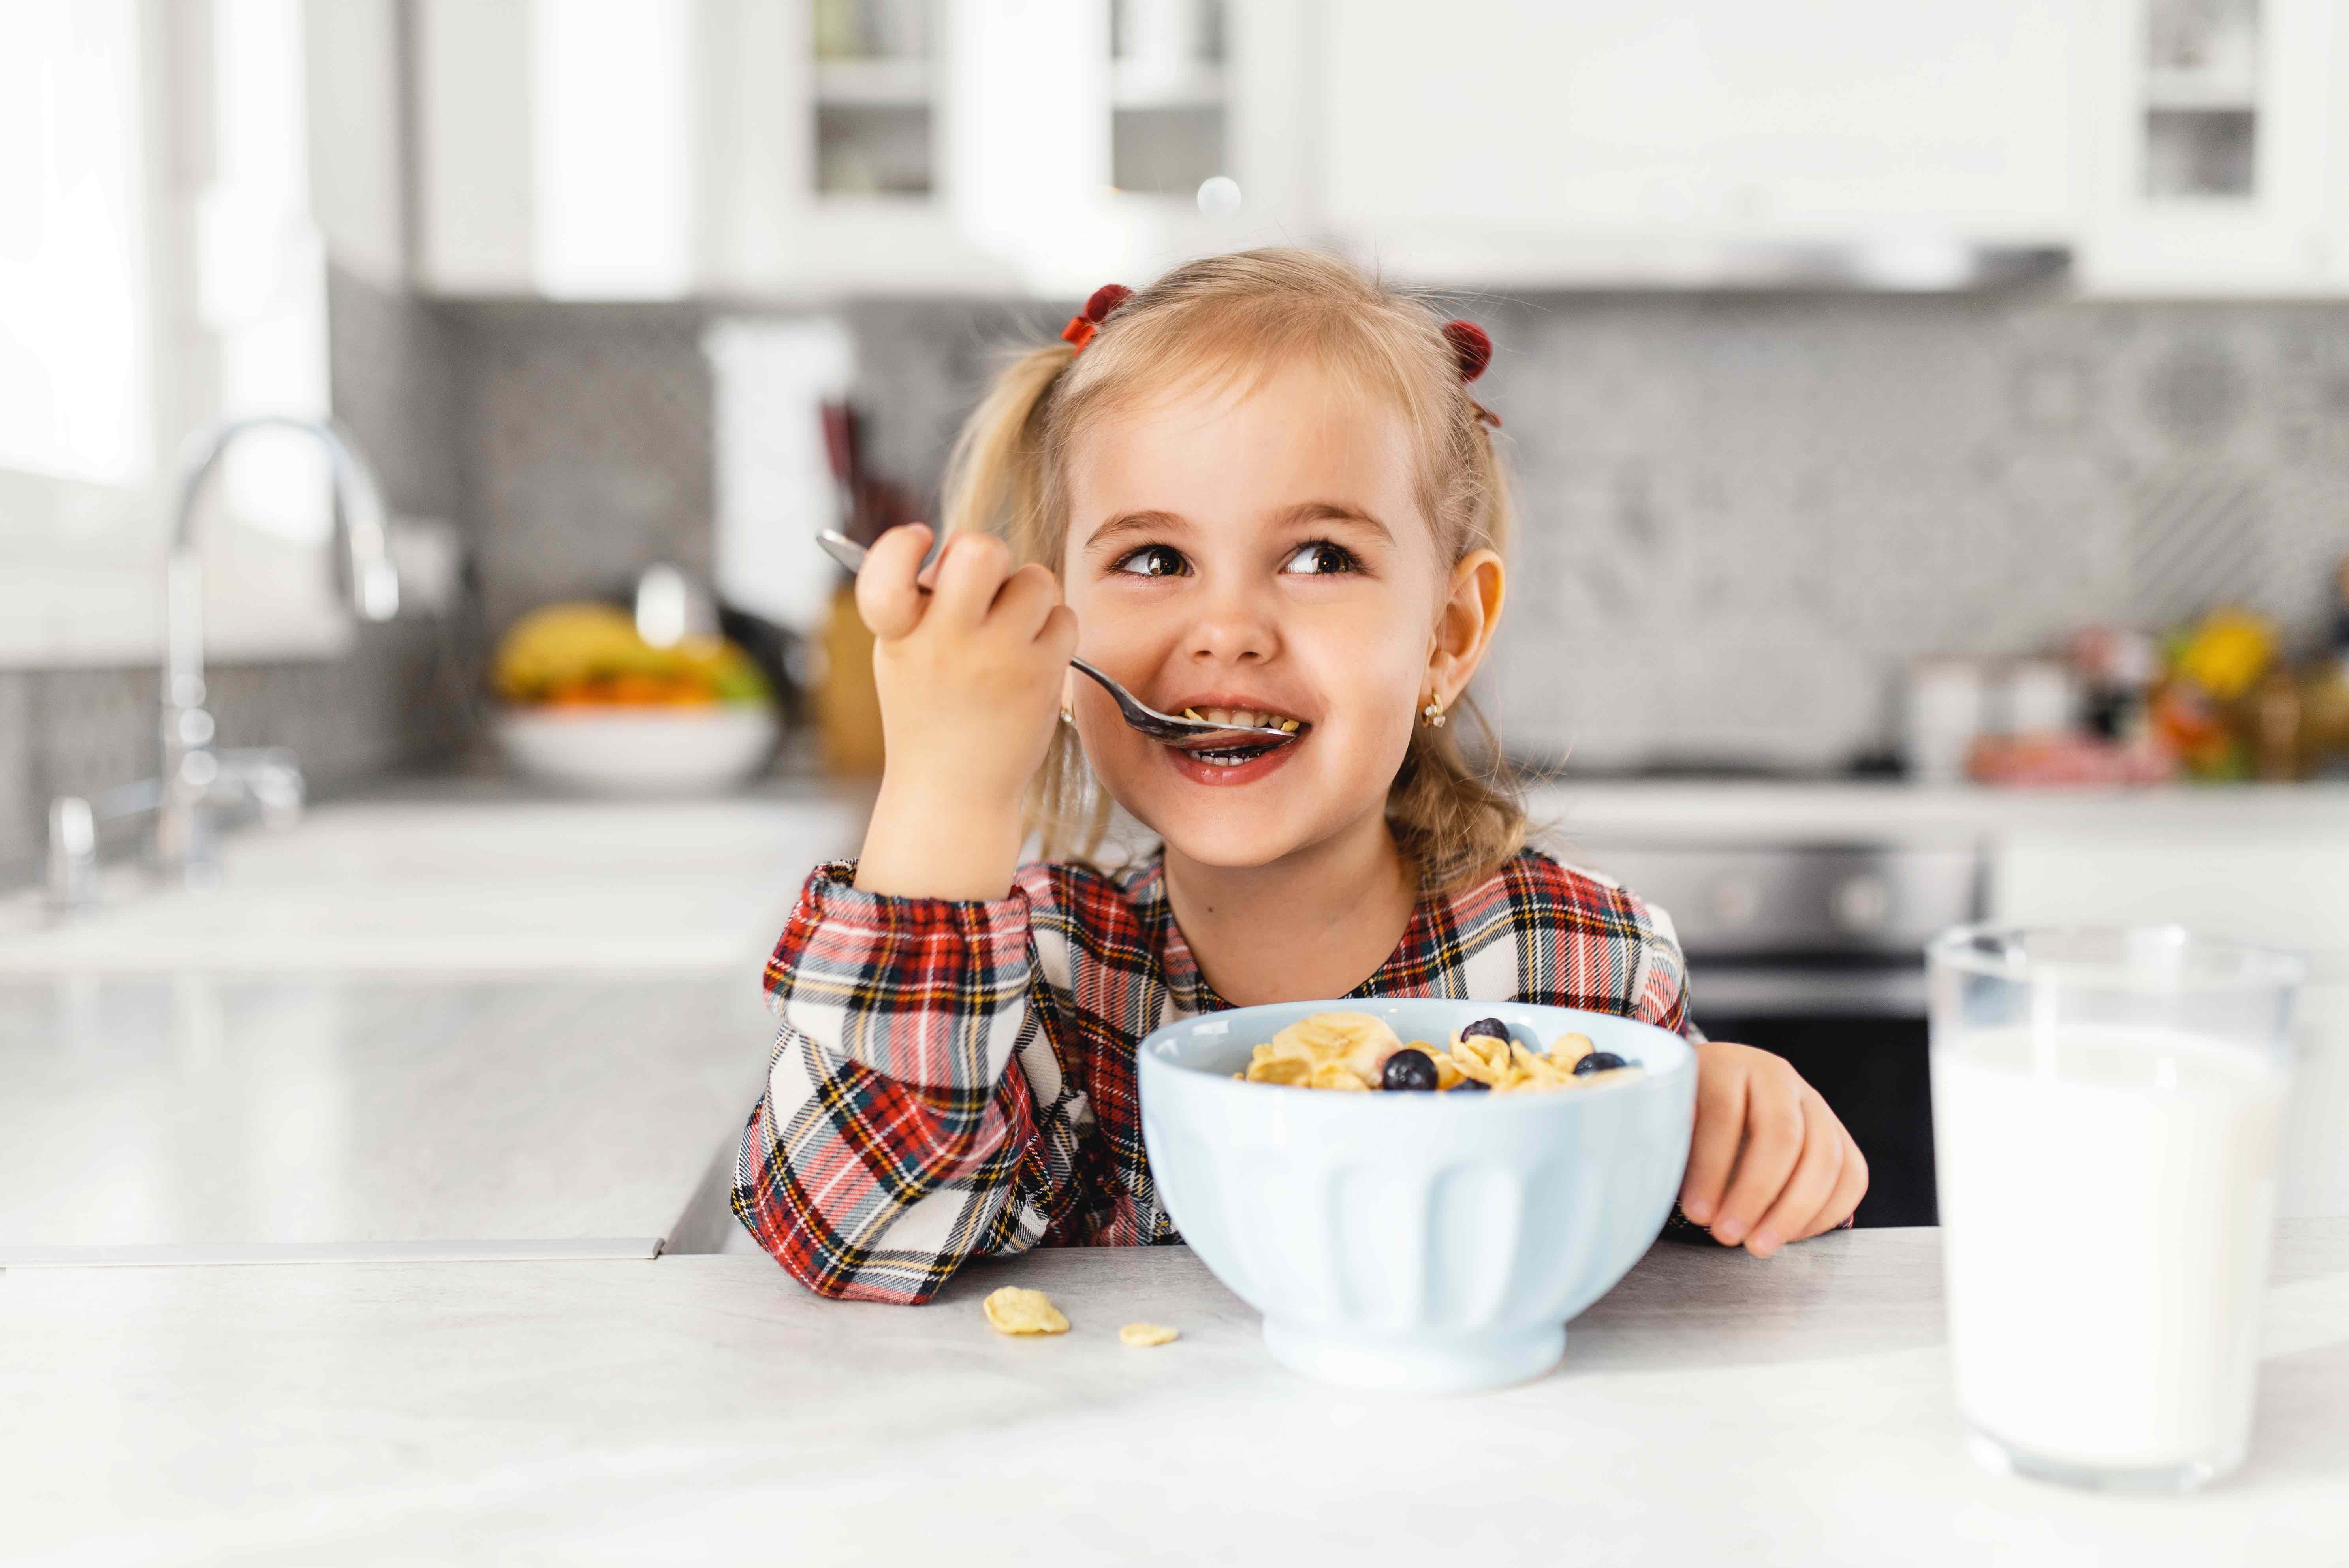 Le petit déjeuner est important pour les enfants. © BurntRedHen, Adobe Stock